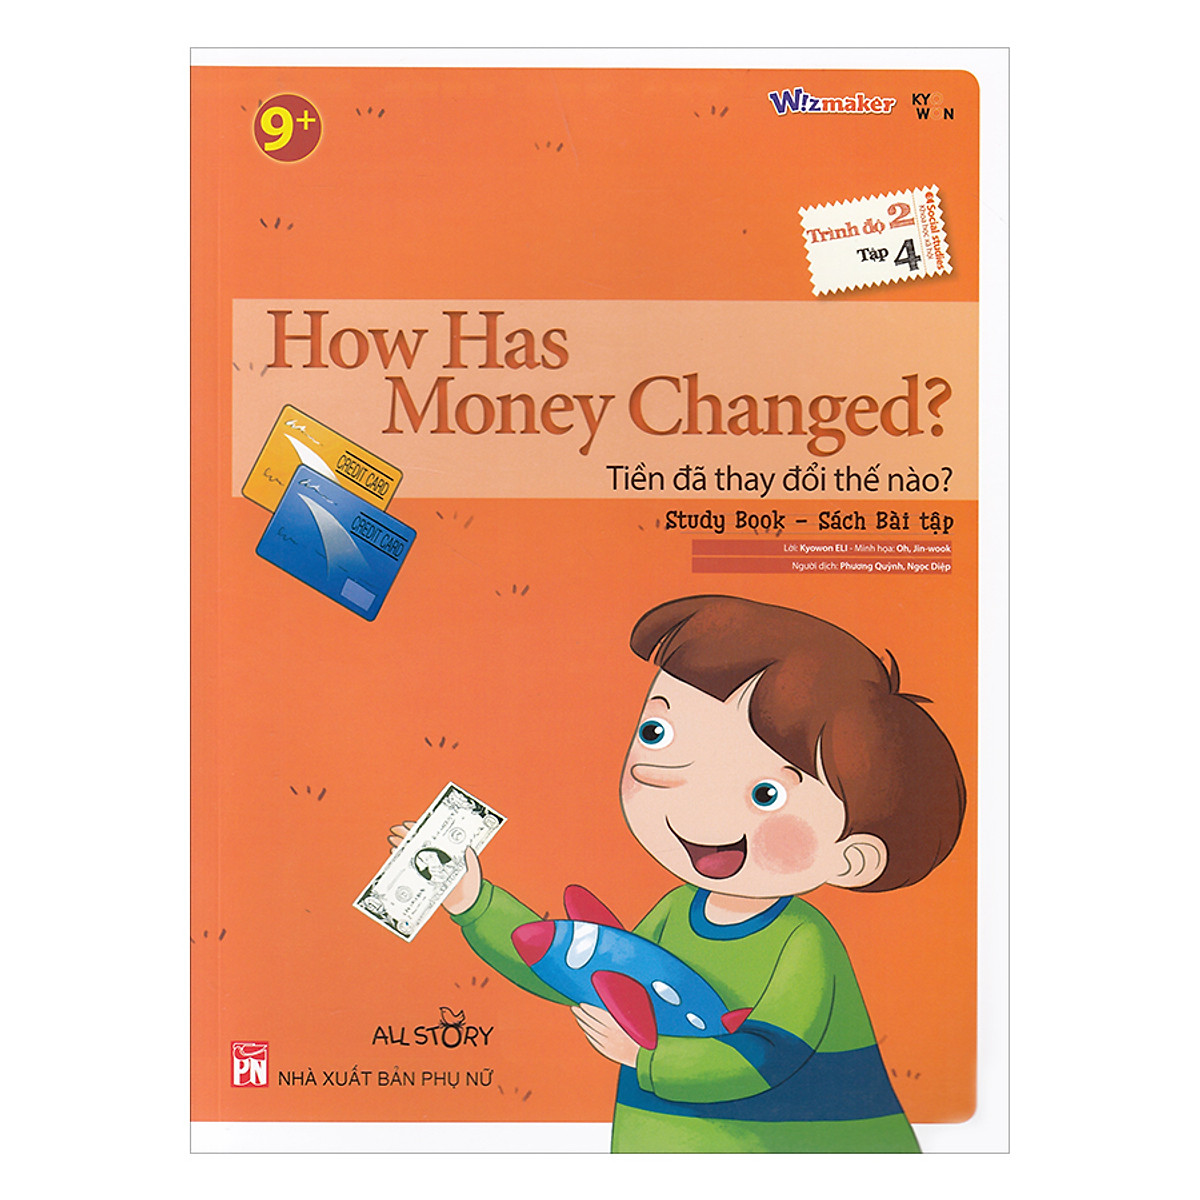 All Story - How Has Money Changed - Trình Độ 2 (Tập 4)